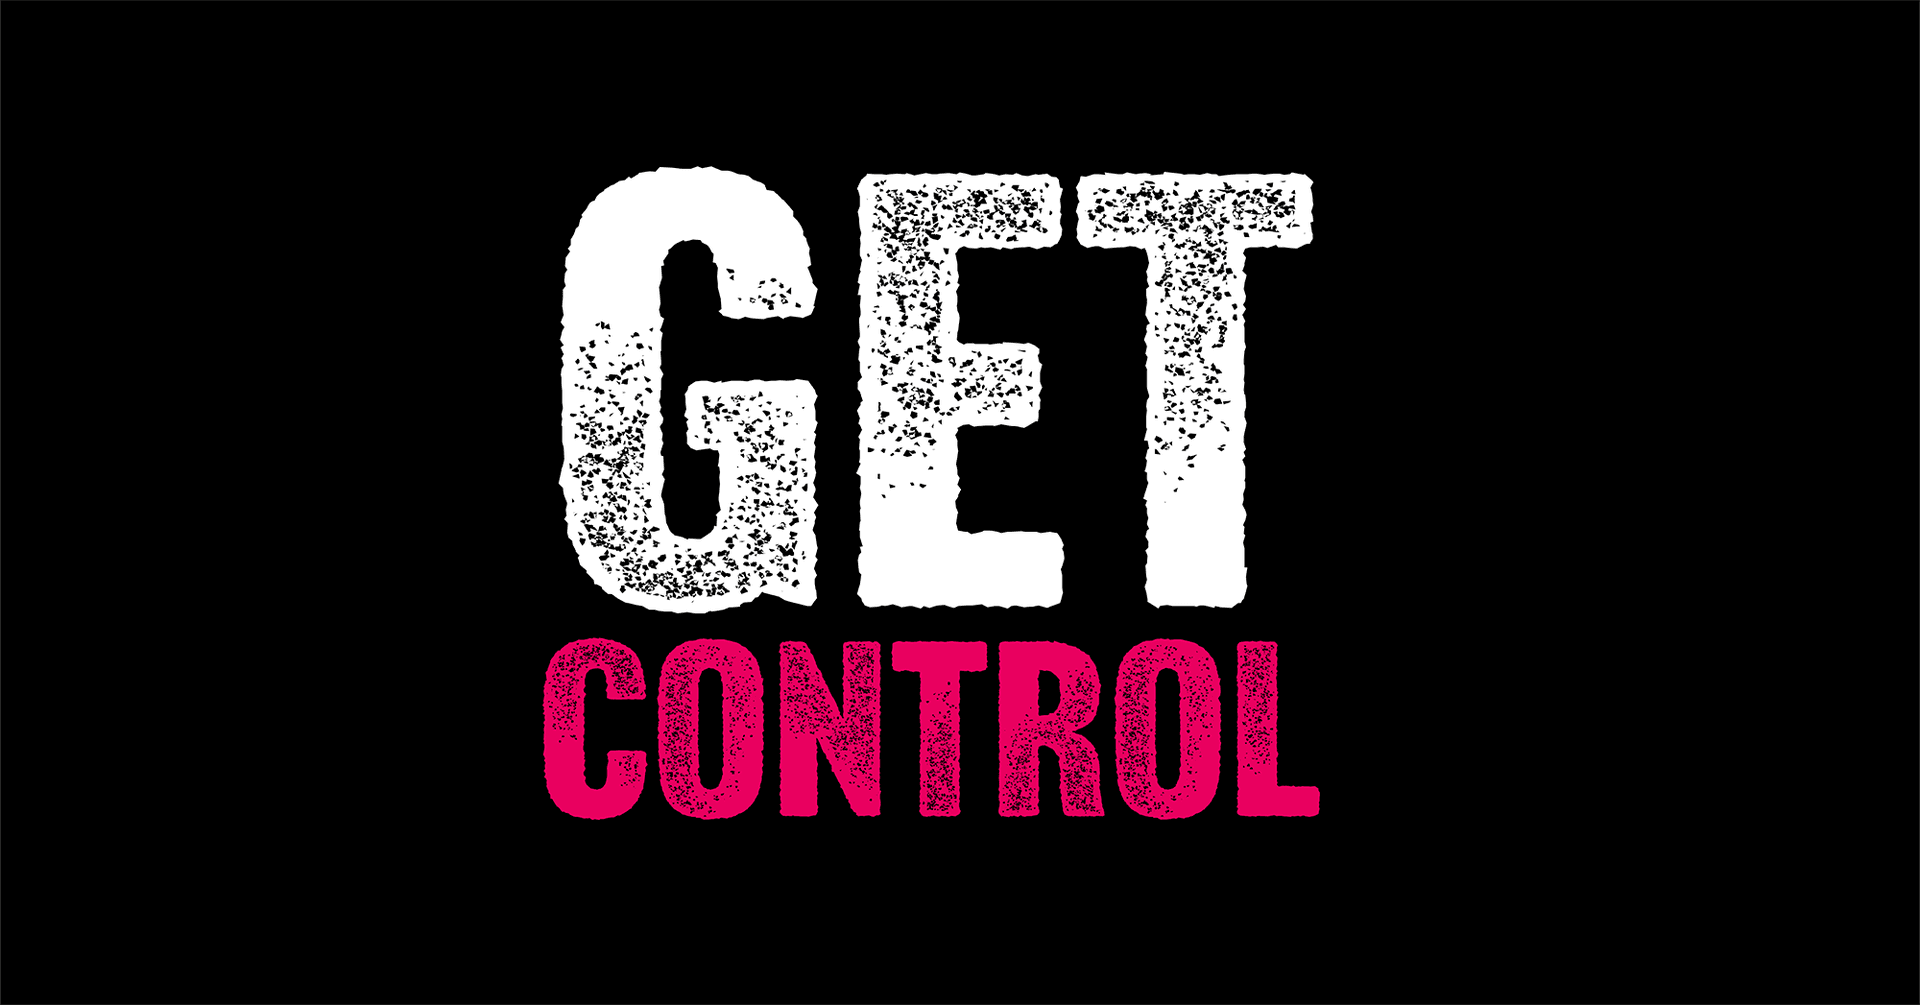 Get control blog